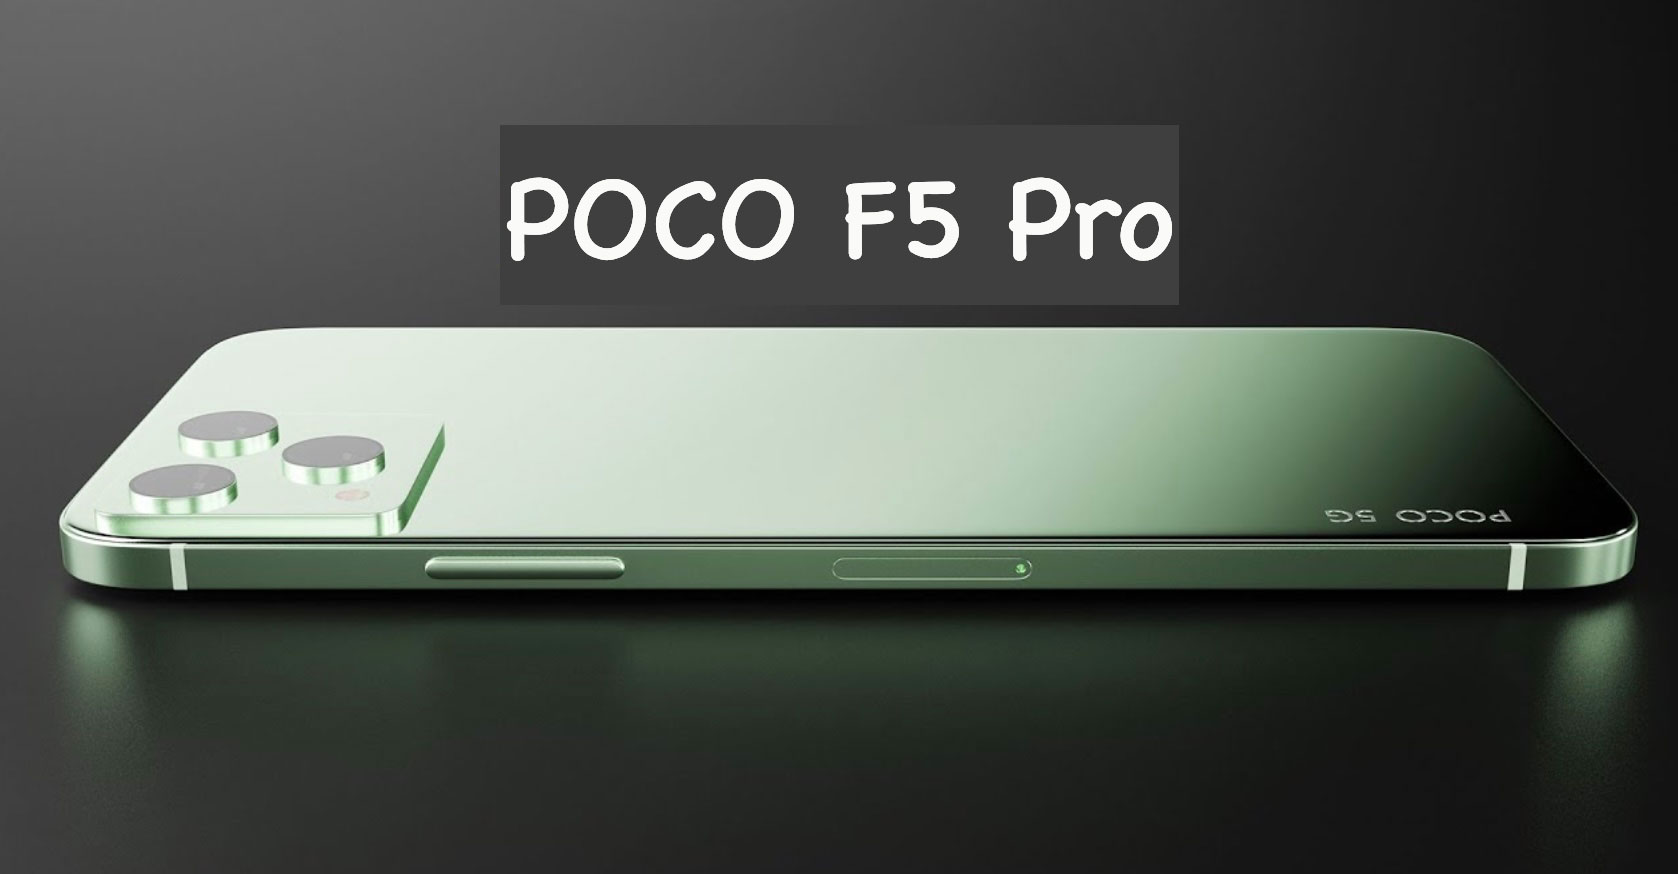 Xiaomi POCO F5 Pro